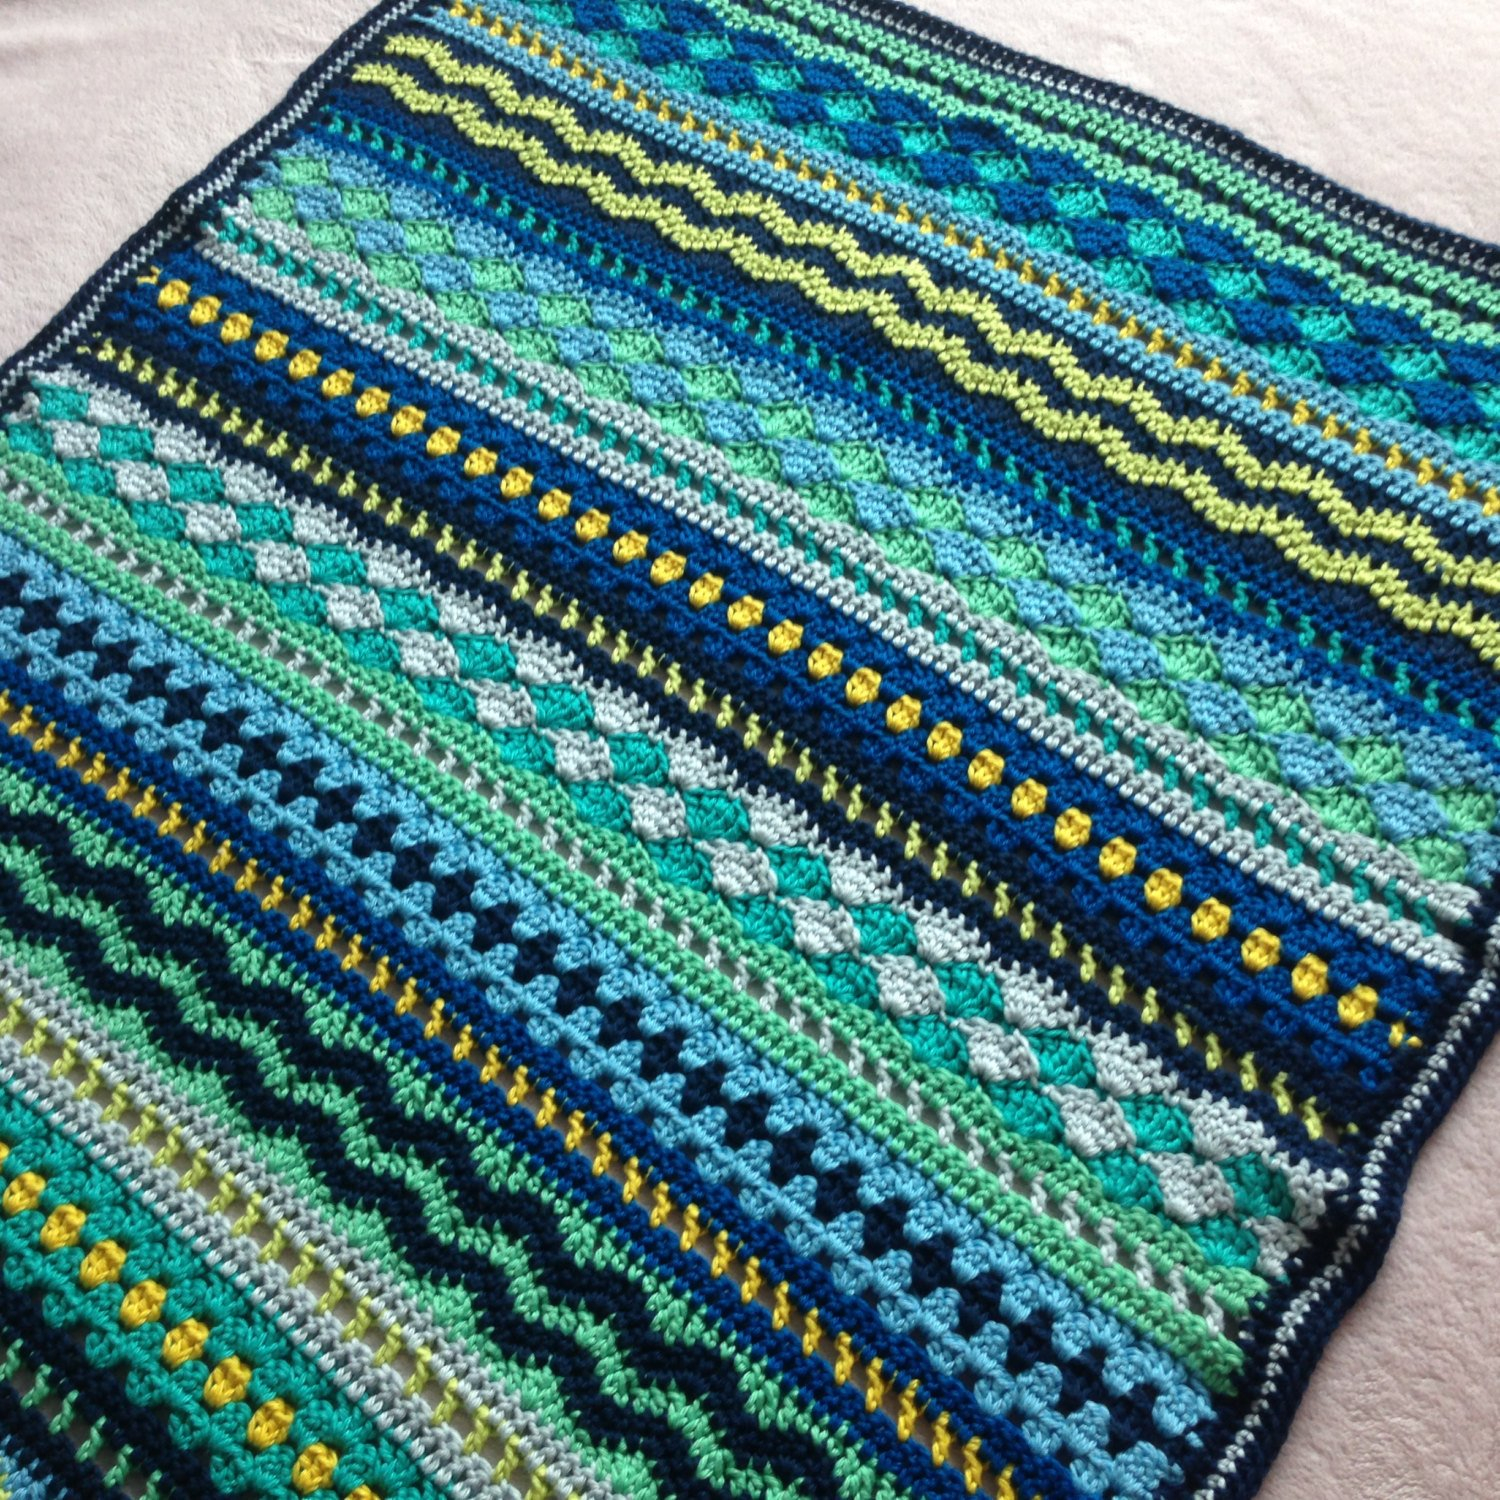 Baby Boy Crochet Blanket Patterns Crochet Ba Blanket Pattern Tutorial Ba Blues Blanket Etsy